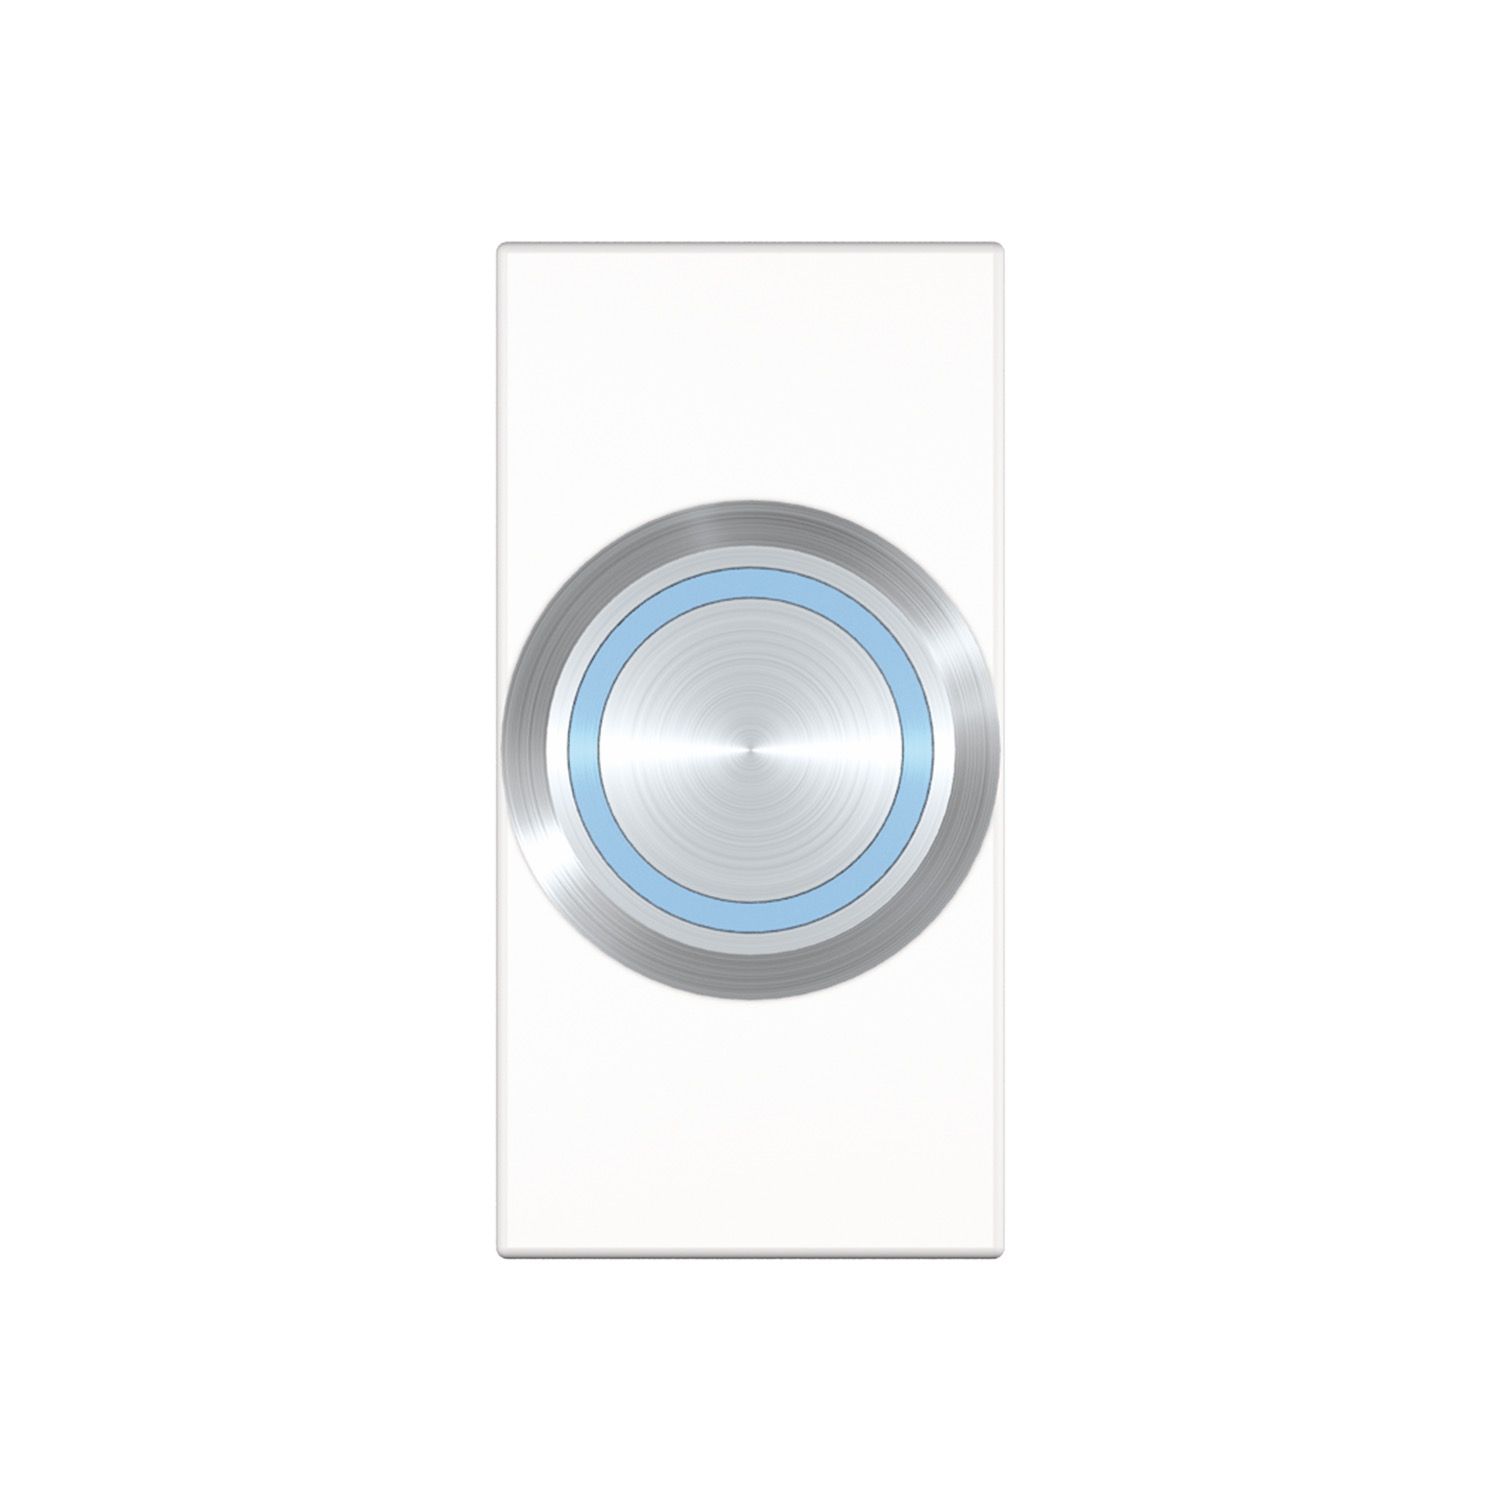 Kindermann Konnect flex 45 click Anschlussblende mit Push Taster LED - Halbblende - Weiß